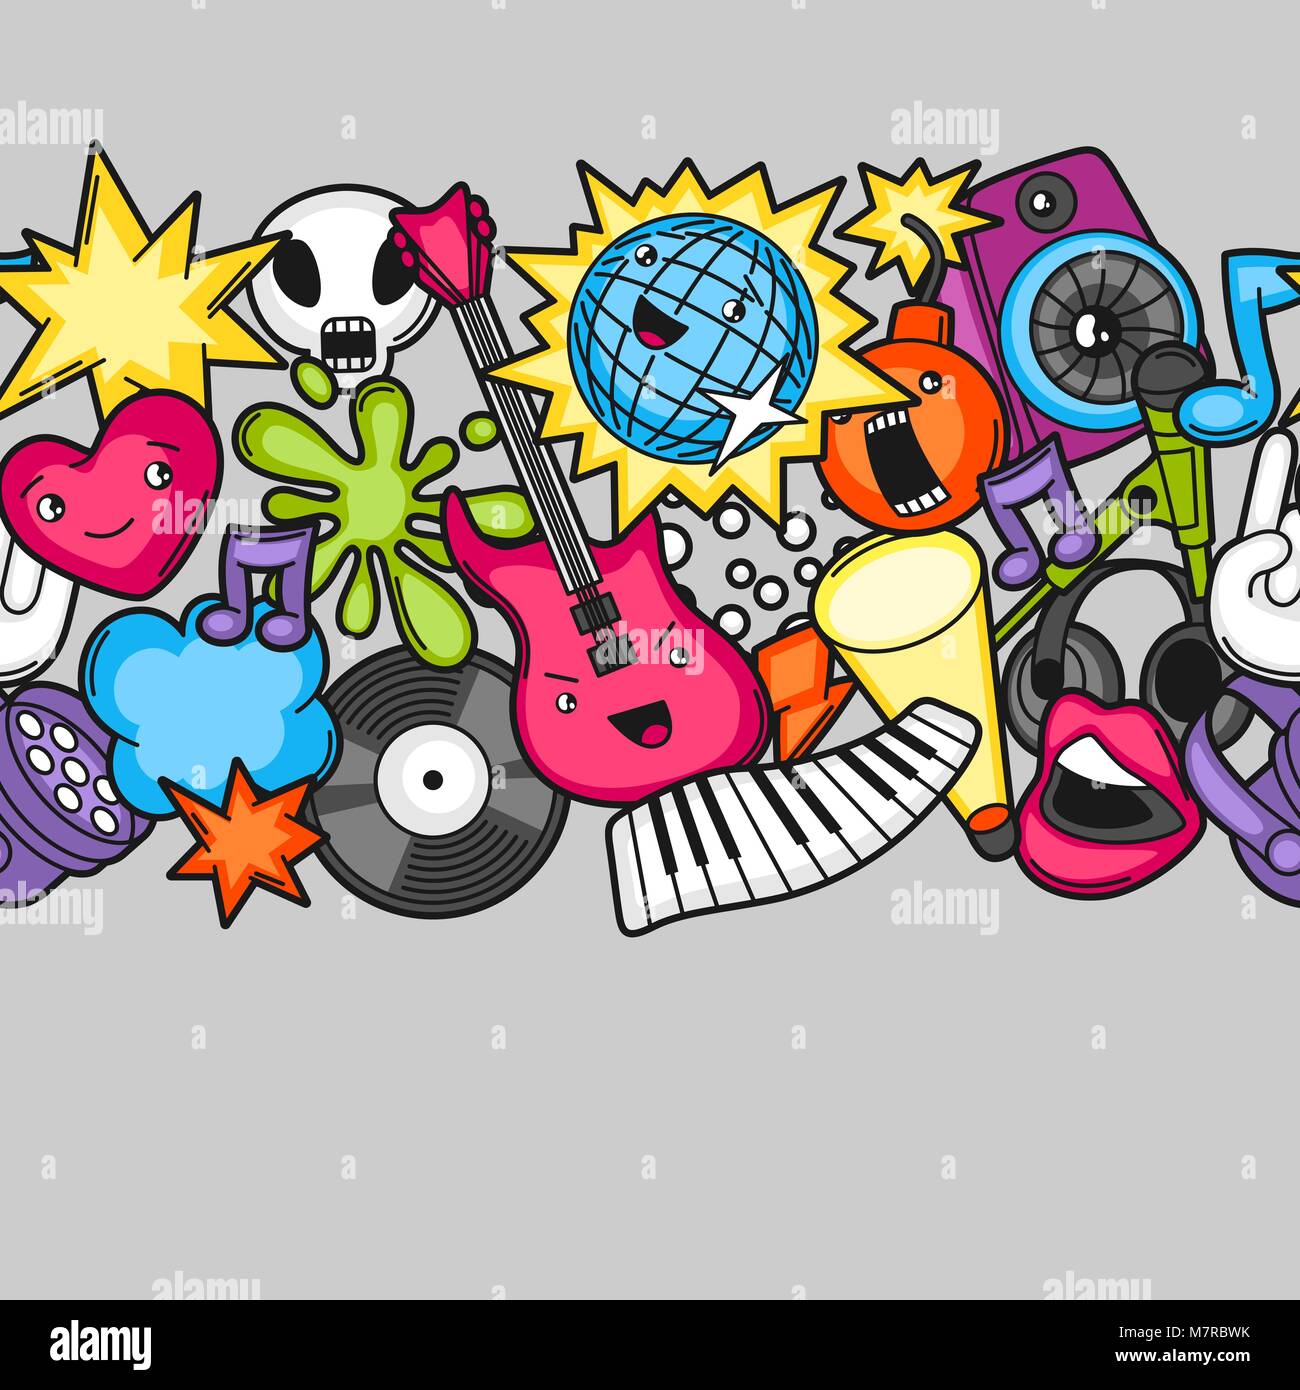 Music party kawaii. transparente Instruments de musique, symboles et objets  dans le style cartoon Image Vectorielle Stock - Alamy